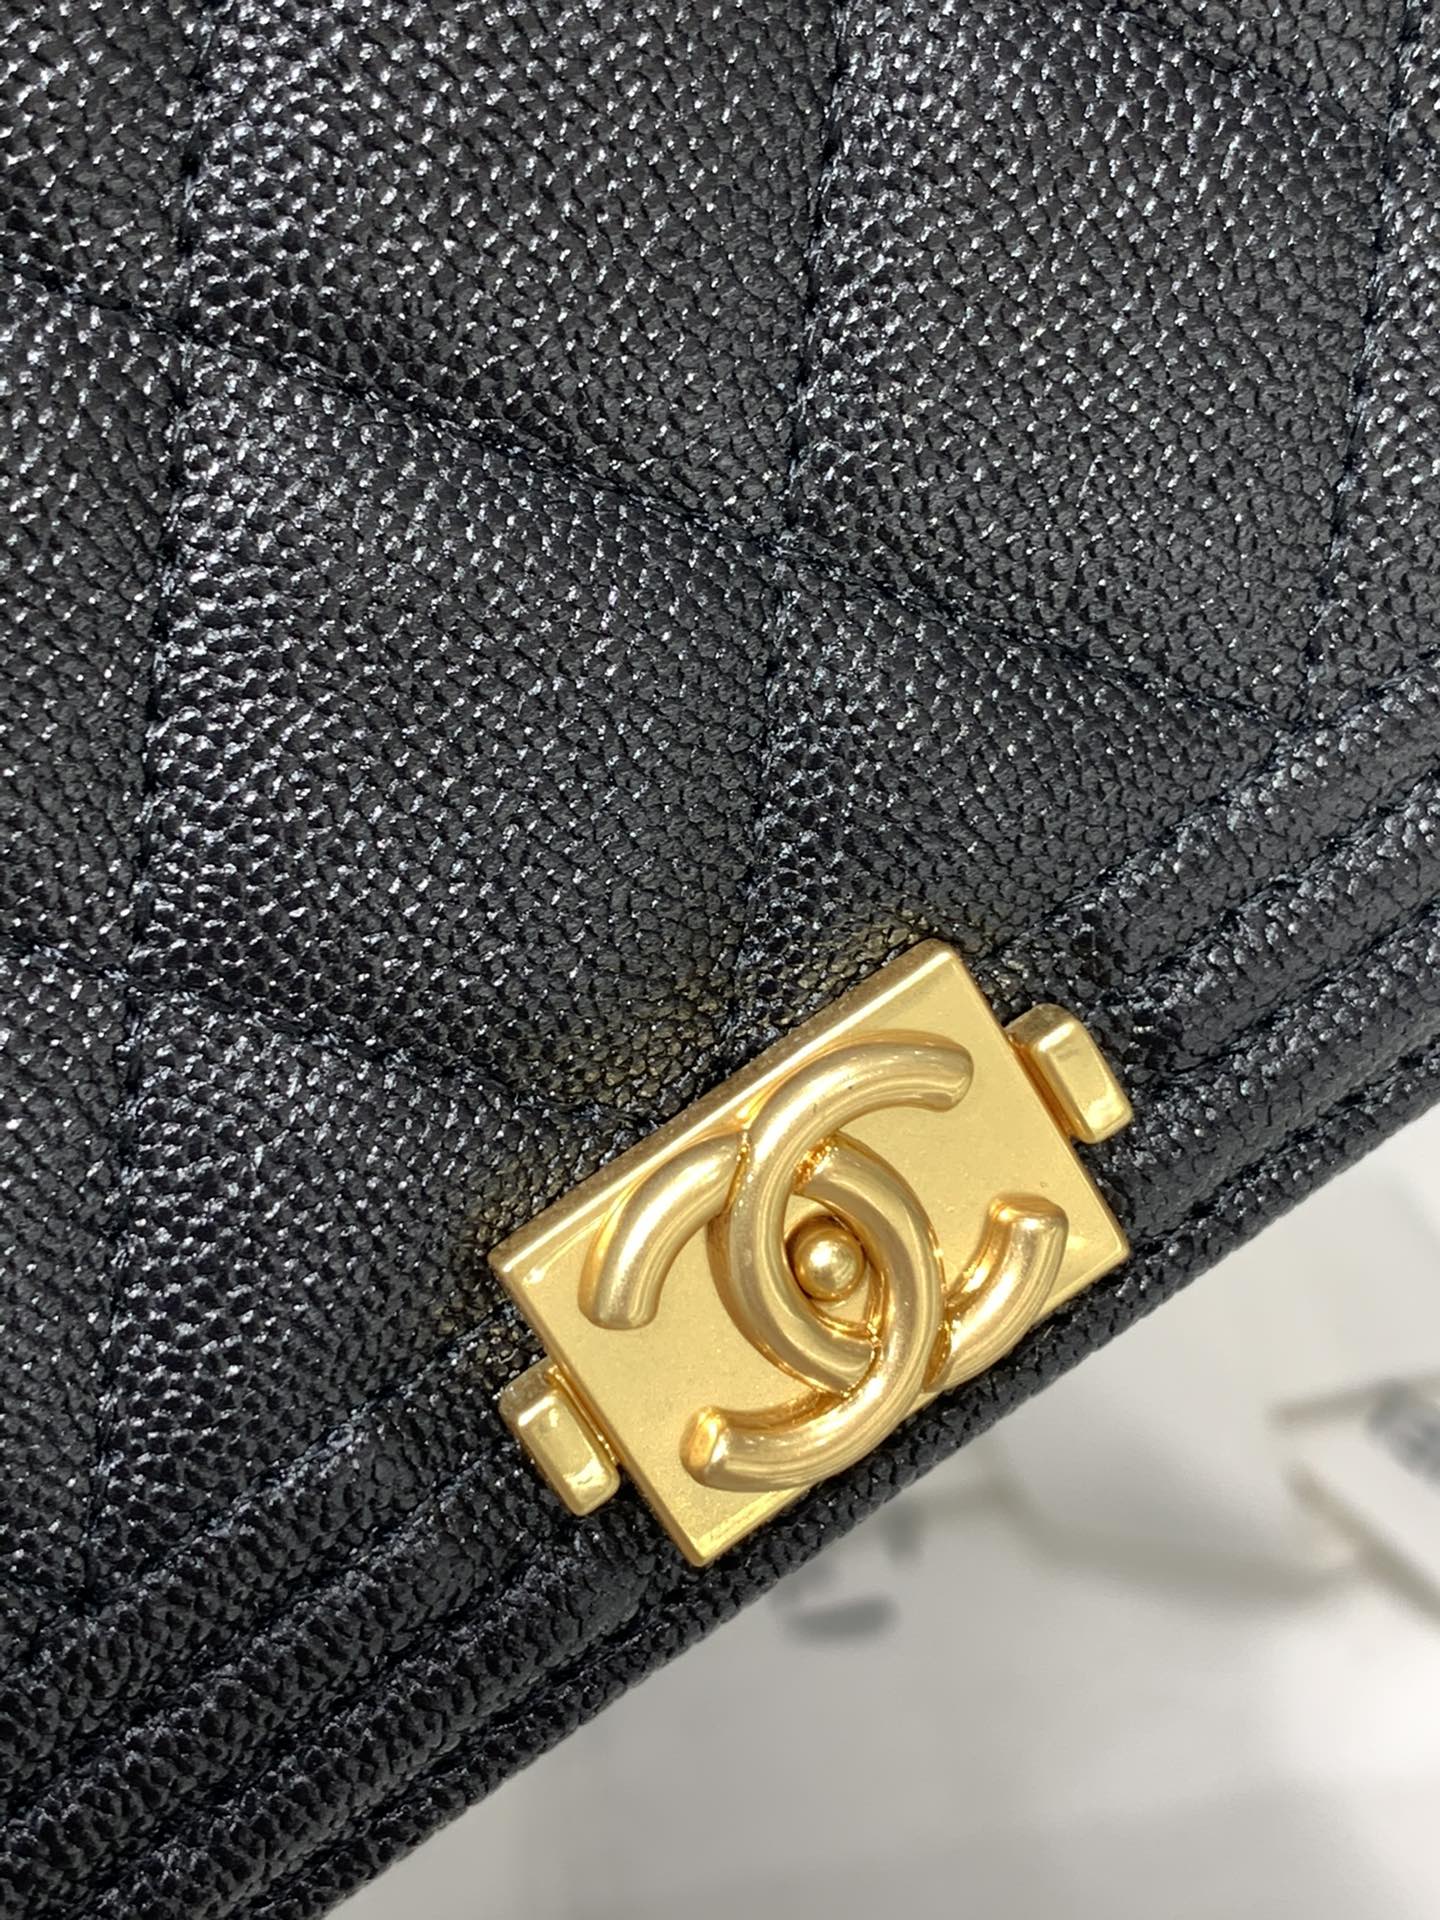 新版→吸扣版Leboy发财包 Chanel woc链条包 全套包装 19.5*12*3.5